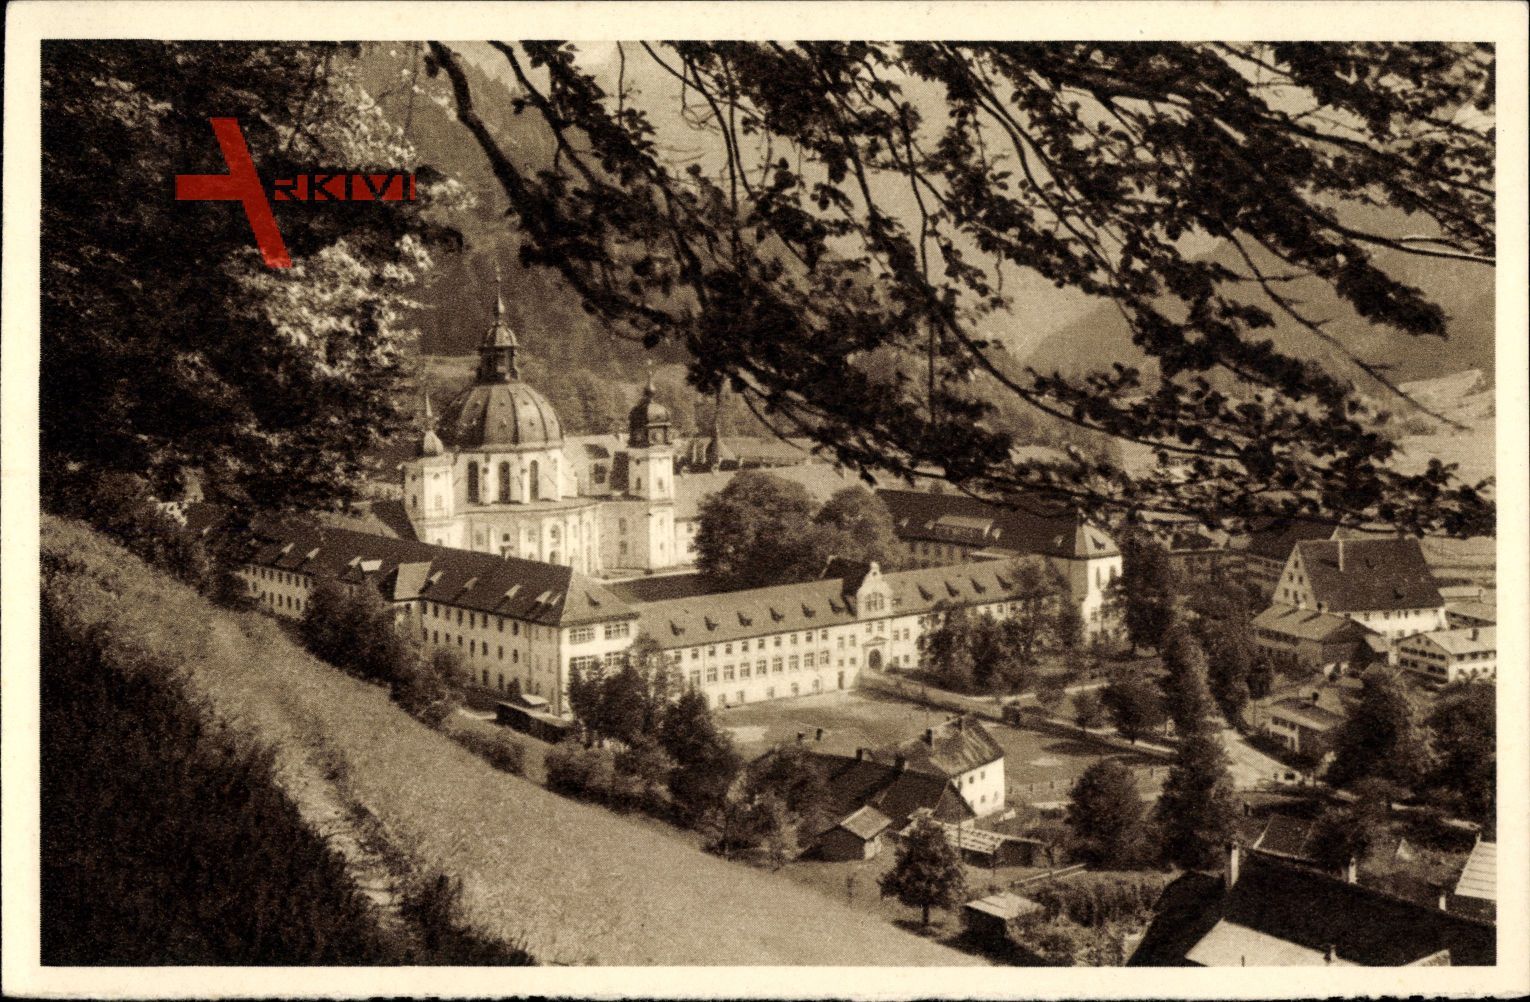 Ettal in Oberbayern, Das schöne Deutschland, Bild 22, Das Kloster